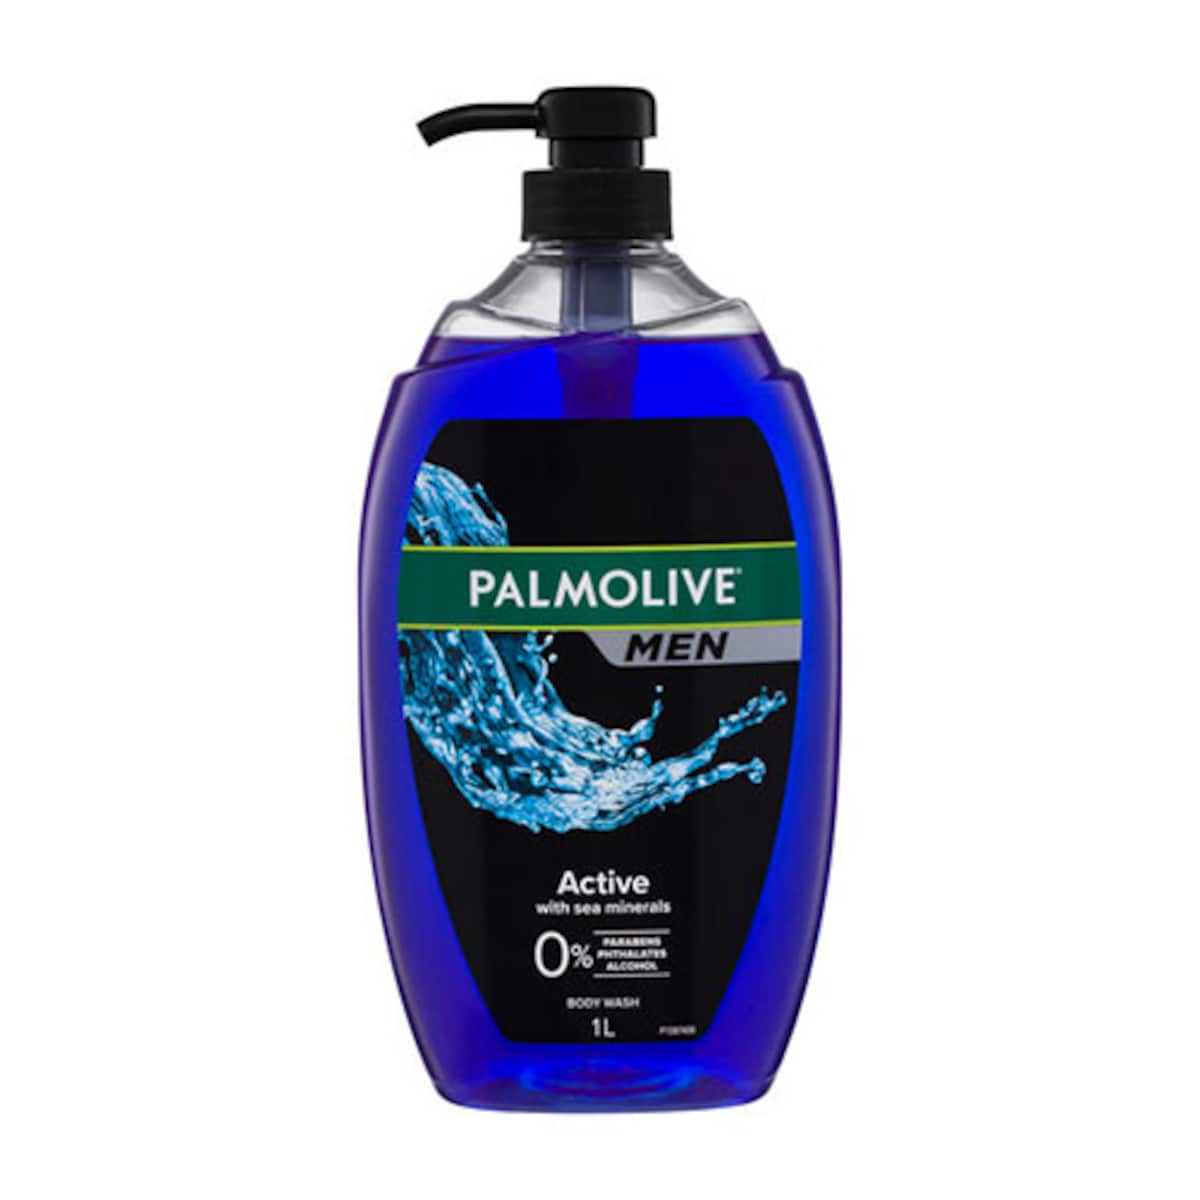 Palmolive Men Active Body Wash 1 Litre